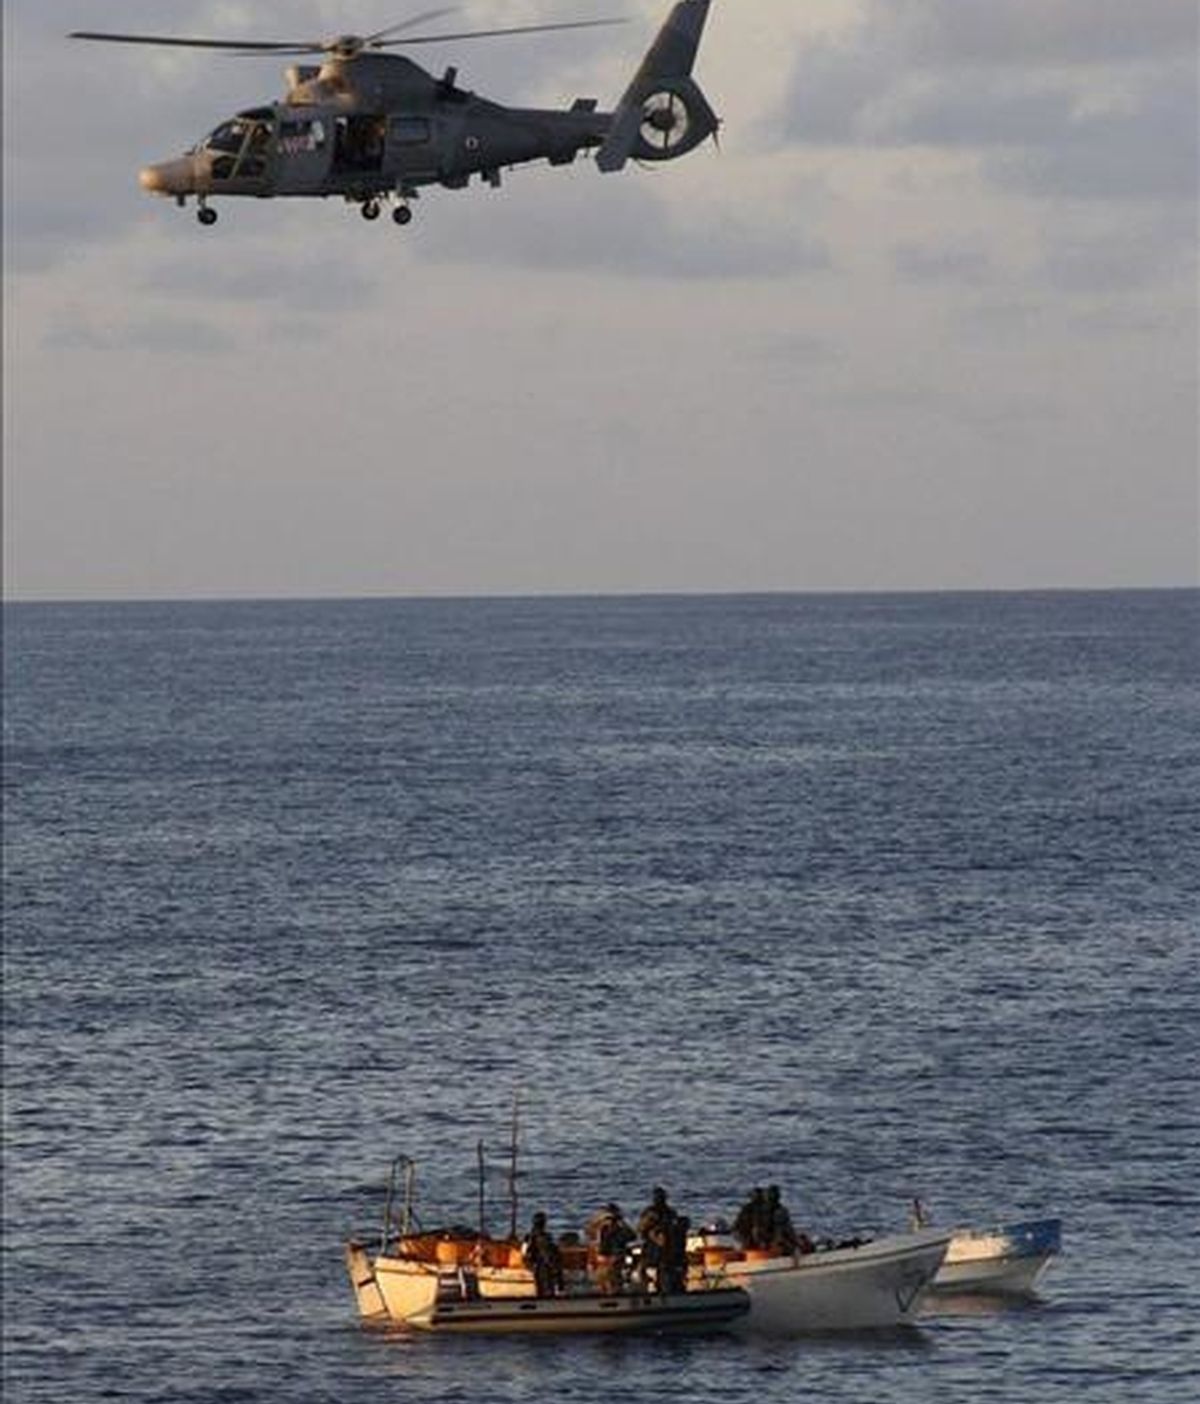 Fuerzas navales de la operación "Atalanta", desplegadas en la zona para evitar la piratería. EFE/Archivo